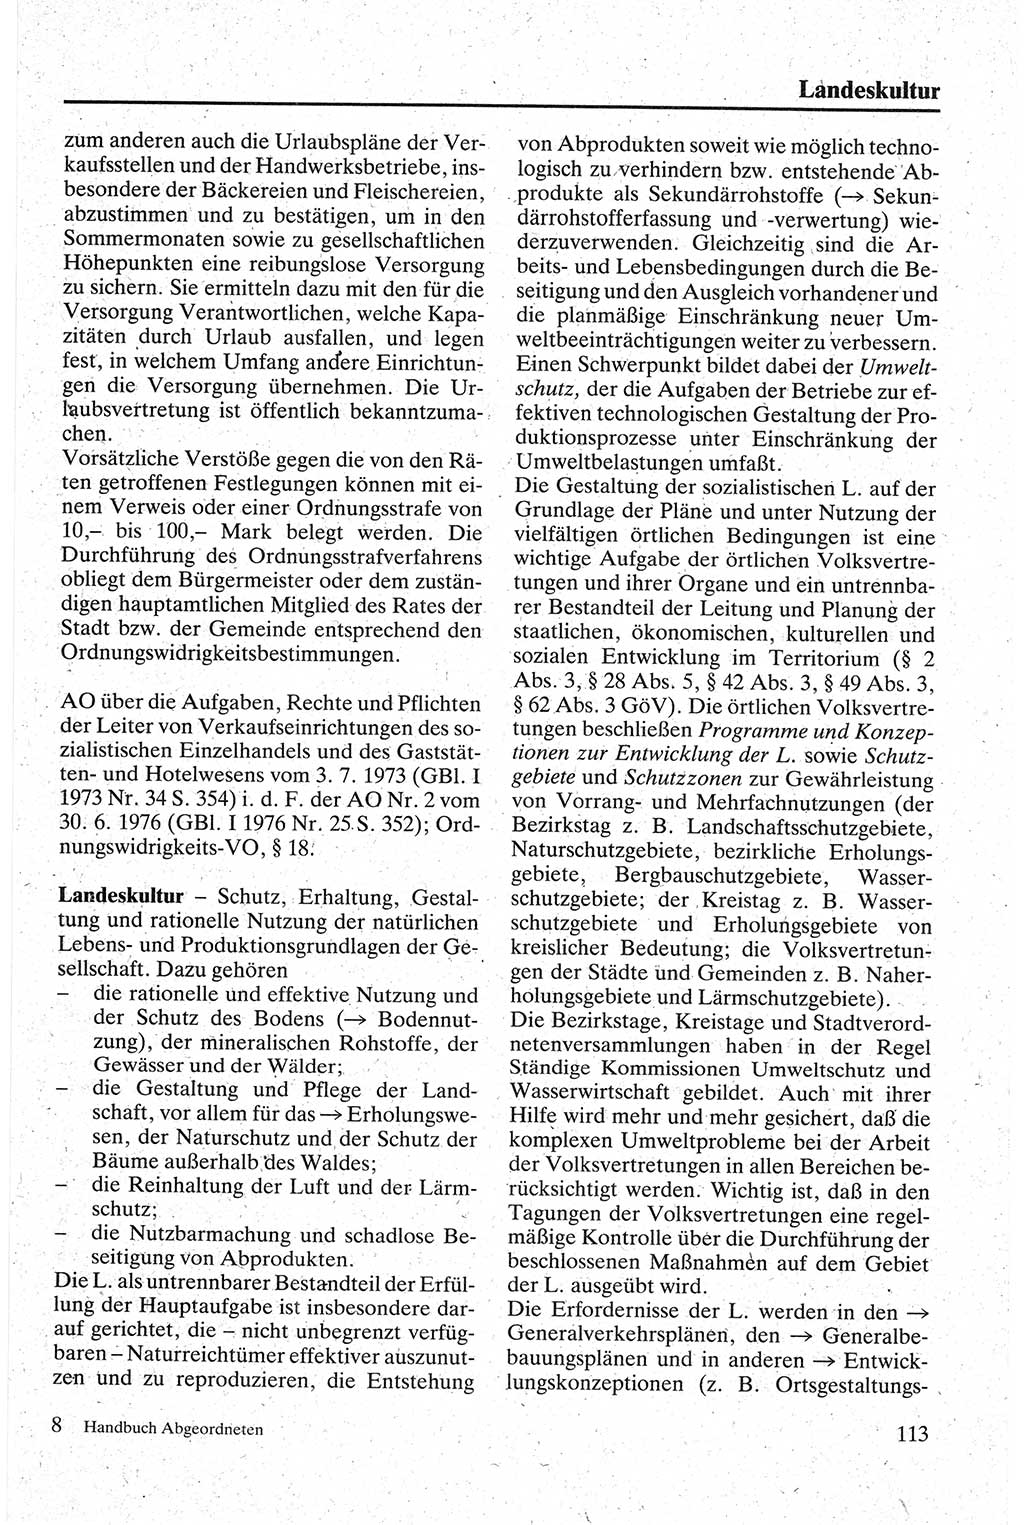 Handbuch für den Abgeordneten [Deutsche Demokratische Republik (DDR)] 1984, Seite 113 (Hb. Abg. DDR 1984, S. 113)